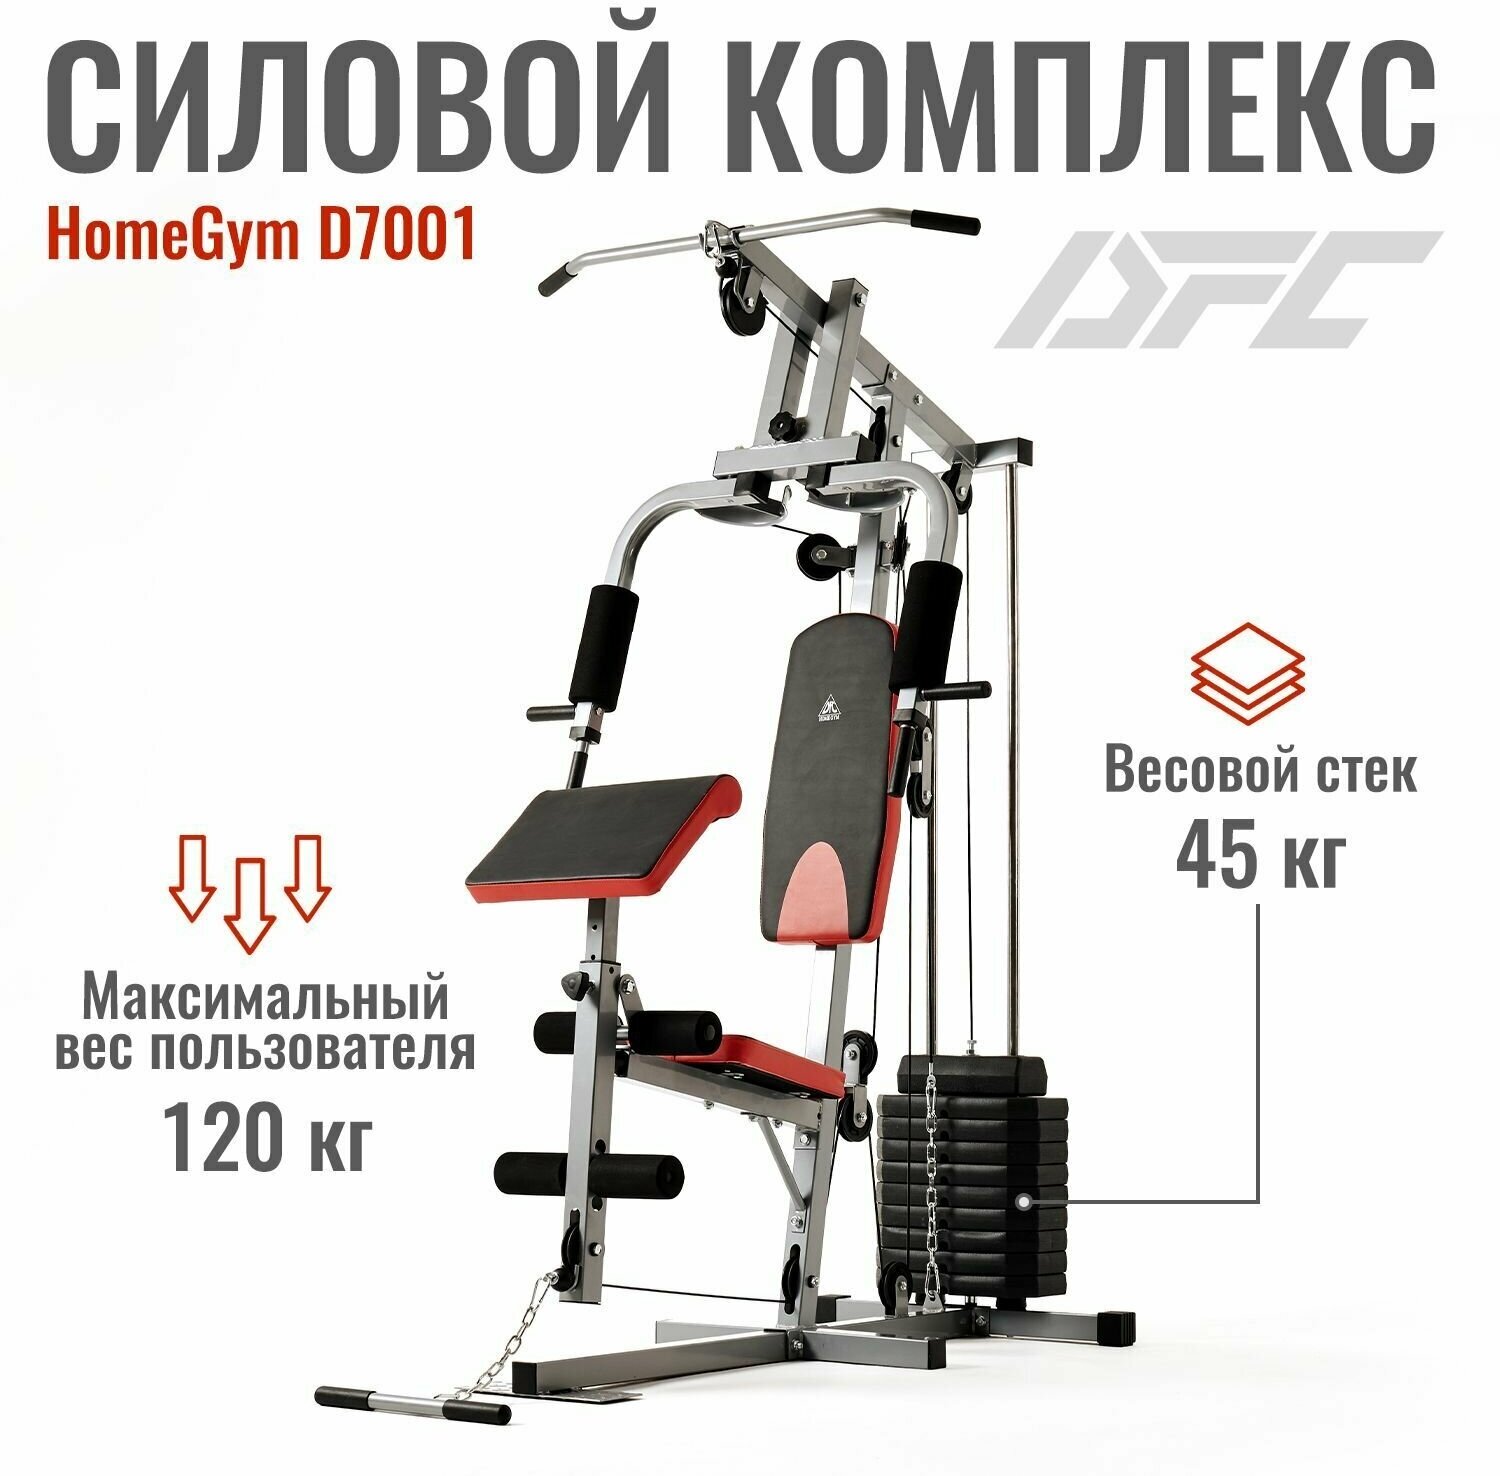 Тренажер СТ-034 фитнес-центр Экстра s-dostavka Тольятти купить не дорого с бесплатной доставкой